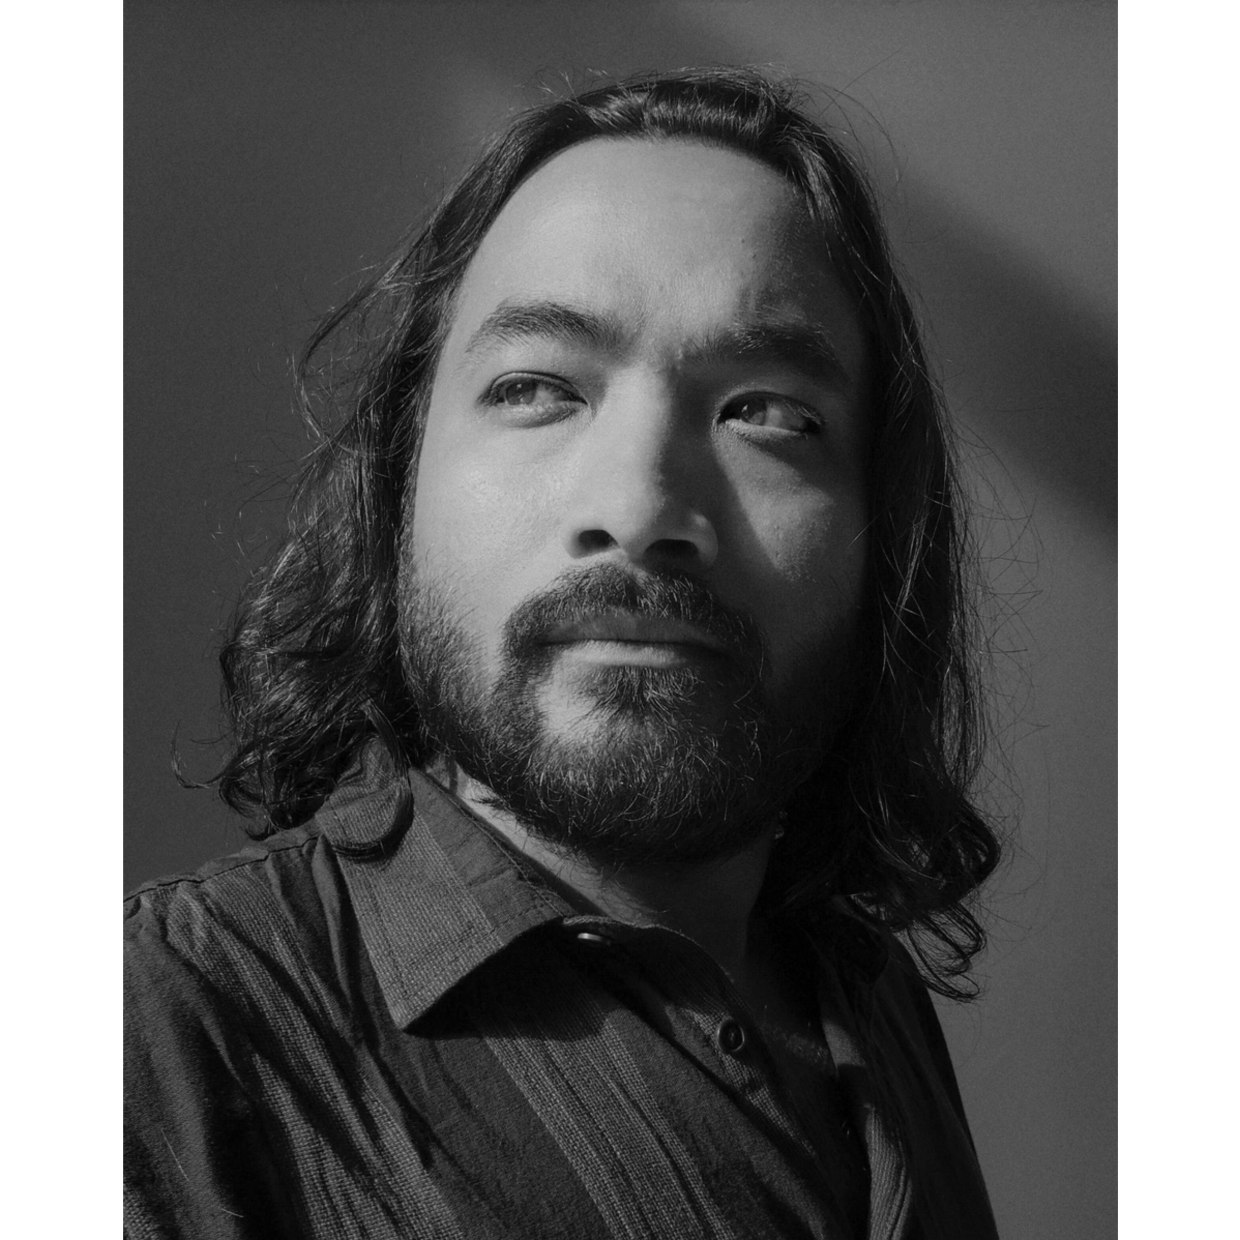 艺术家：伊斯梅尔·费尔杜斯 伊斯梅尔·费尔杜斯，1989年出生于孟加拉国，目前往返居住于美国纽约和孟加拉国。他是巴黎Agence VU’画廊的成员，围绕着社会、文化和人道主义主题展开工作。在达喀尔的商学院学习期间，他第一次接触到摄影。2013年，达喀尔的拉纳广场服装厂（Rana Plaza）发生坍塌事故，造成1100多名工人死亡，成为孟加拉国历史上最严重的工业灾难之一。事件发生后，费尔杜斯创作了一系列深刻的摄影作品。他的纪录片《时尚的代价》（The Cost of Fashion）和摄影项目《拉纳广场之后》（After Rana Plaza）揭示了“快时尚”行业造成的破坏性影响。他的摄影作品也涉及四大洲的移民和难民问题。费尔杜斯受雇于多家重要报纸和杂志，其作品已斩获许多奖项。